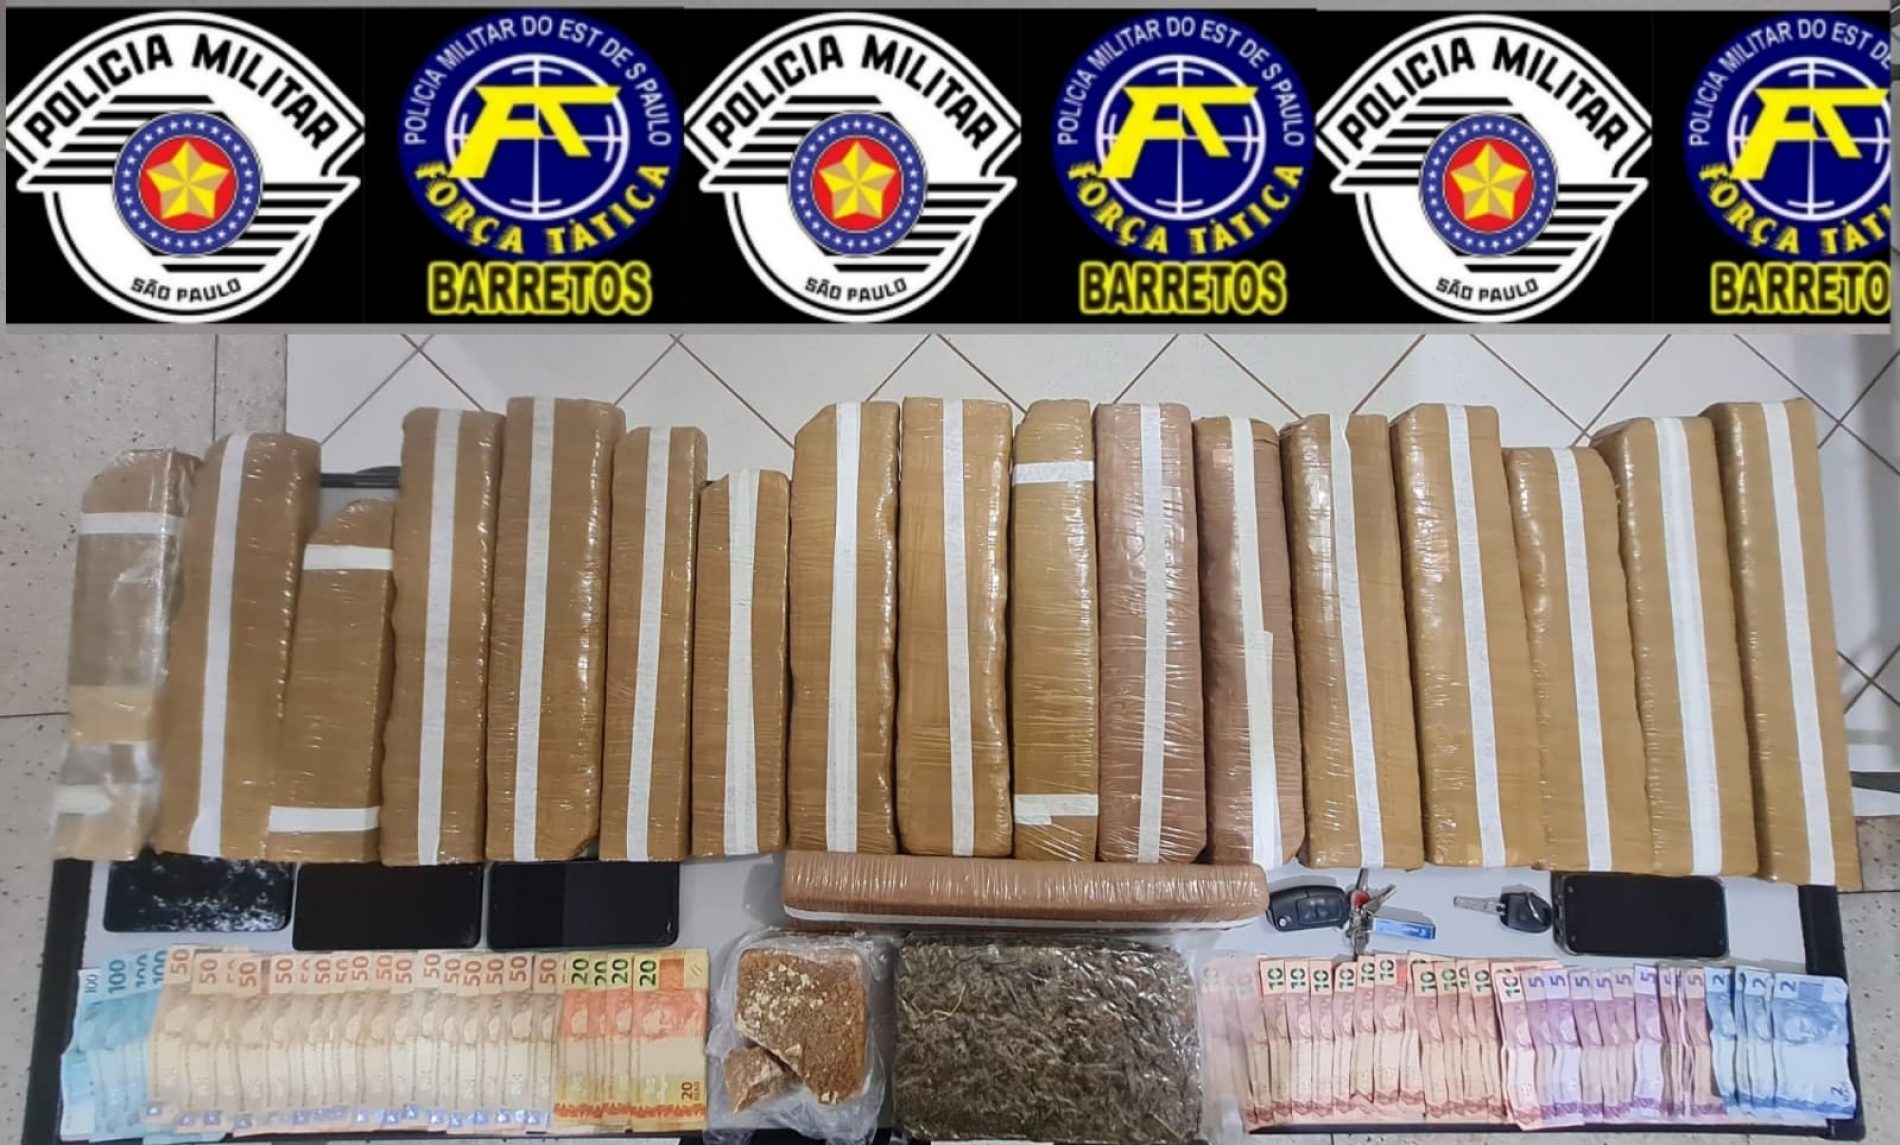 Policia Militar prende quatro pessoas por tráfico de drogas e apreende mais de 20 quilos de entorpecentes